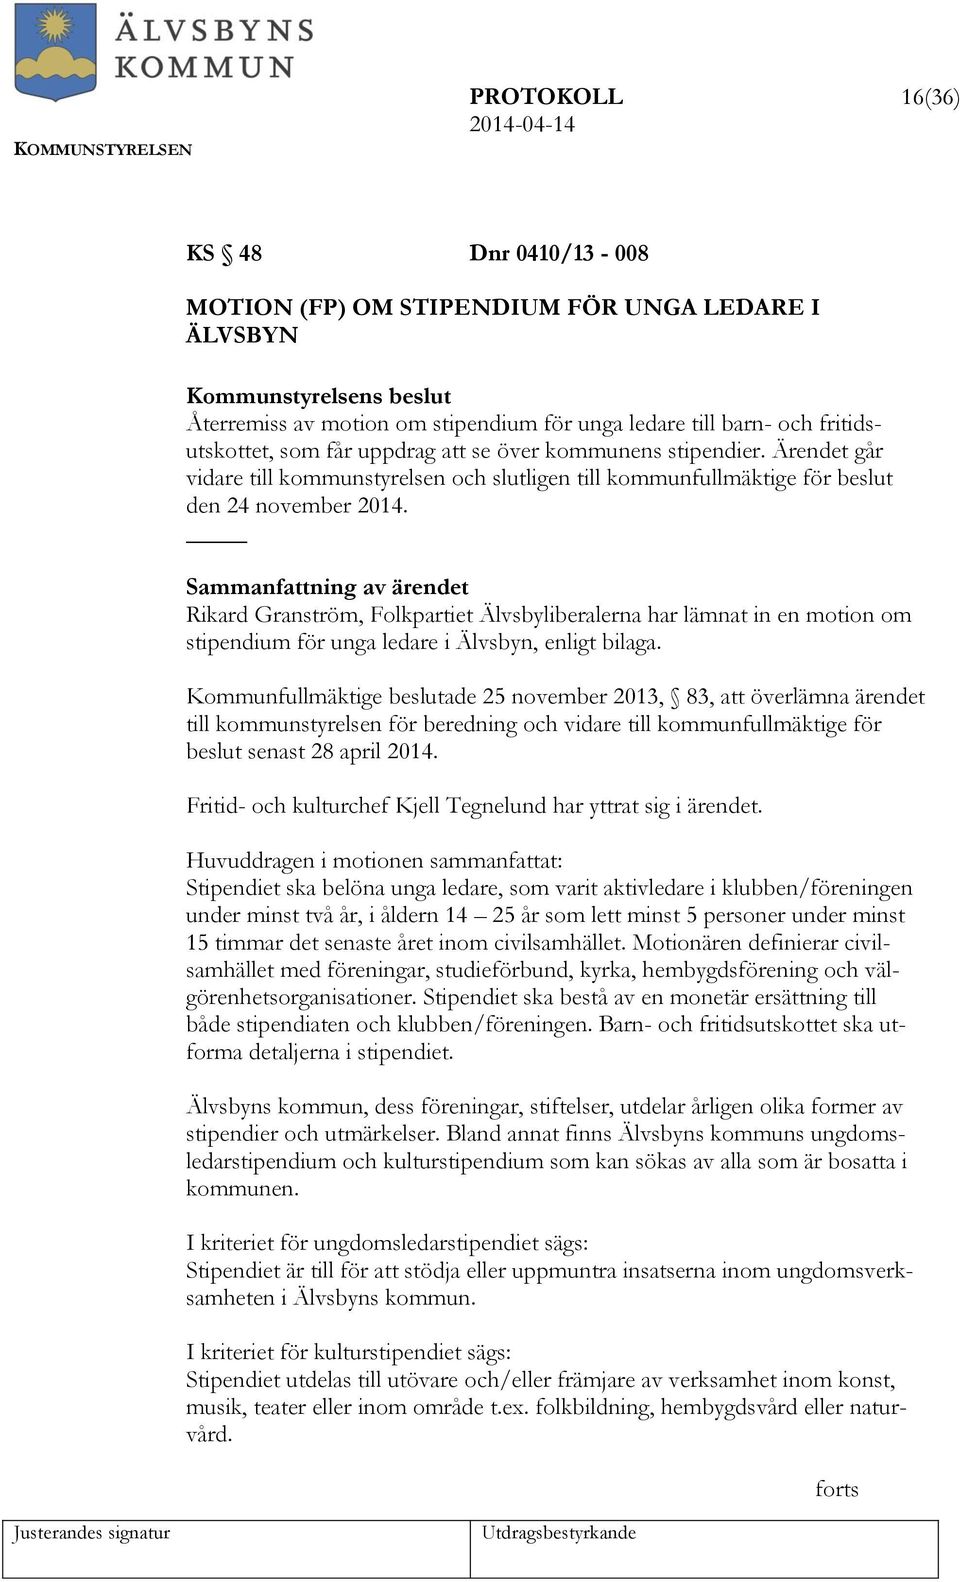 Rikard Granström, Folkpartiet Älvsbyliberalerna har lämnat in en motion om stipendium för unga ledare i Älvsbyn, enligt bilaga.